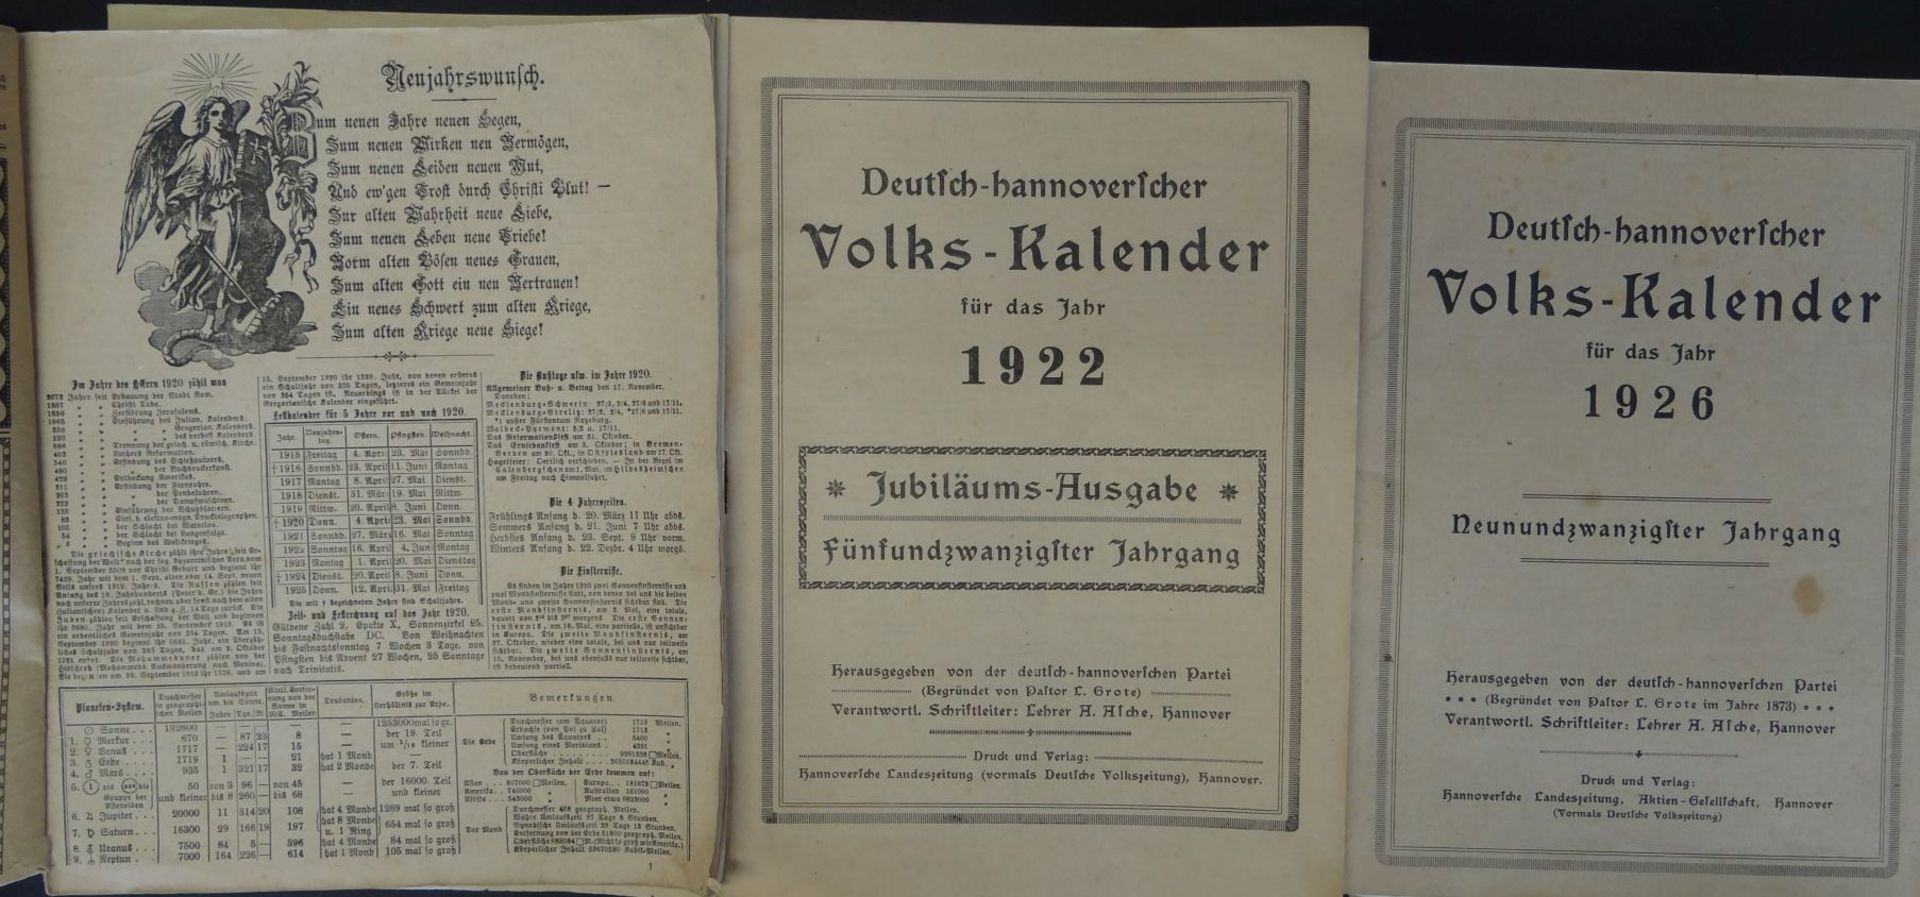 3x "Deutsch hannoverscher Volks-Kalender" , 1920-22-26 - Bild 2 aus 5